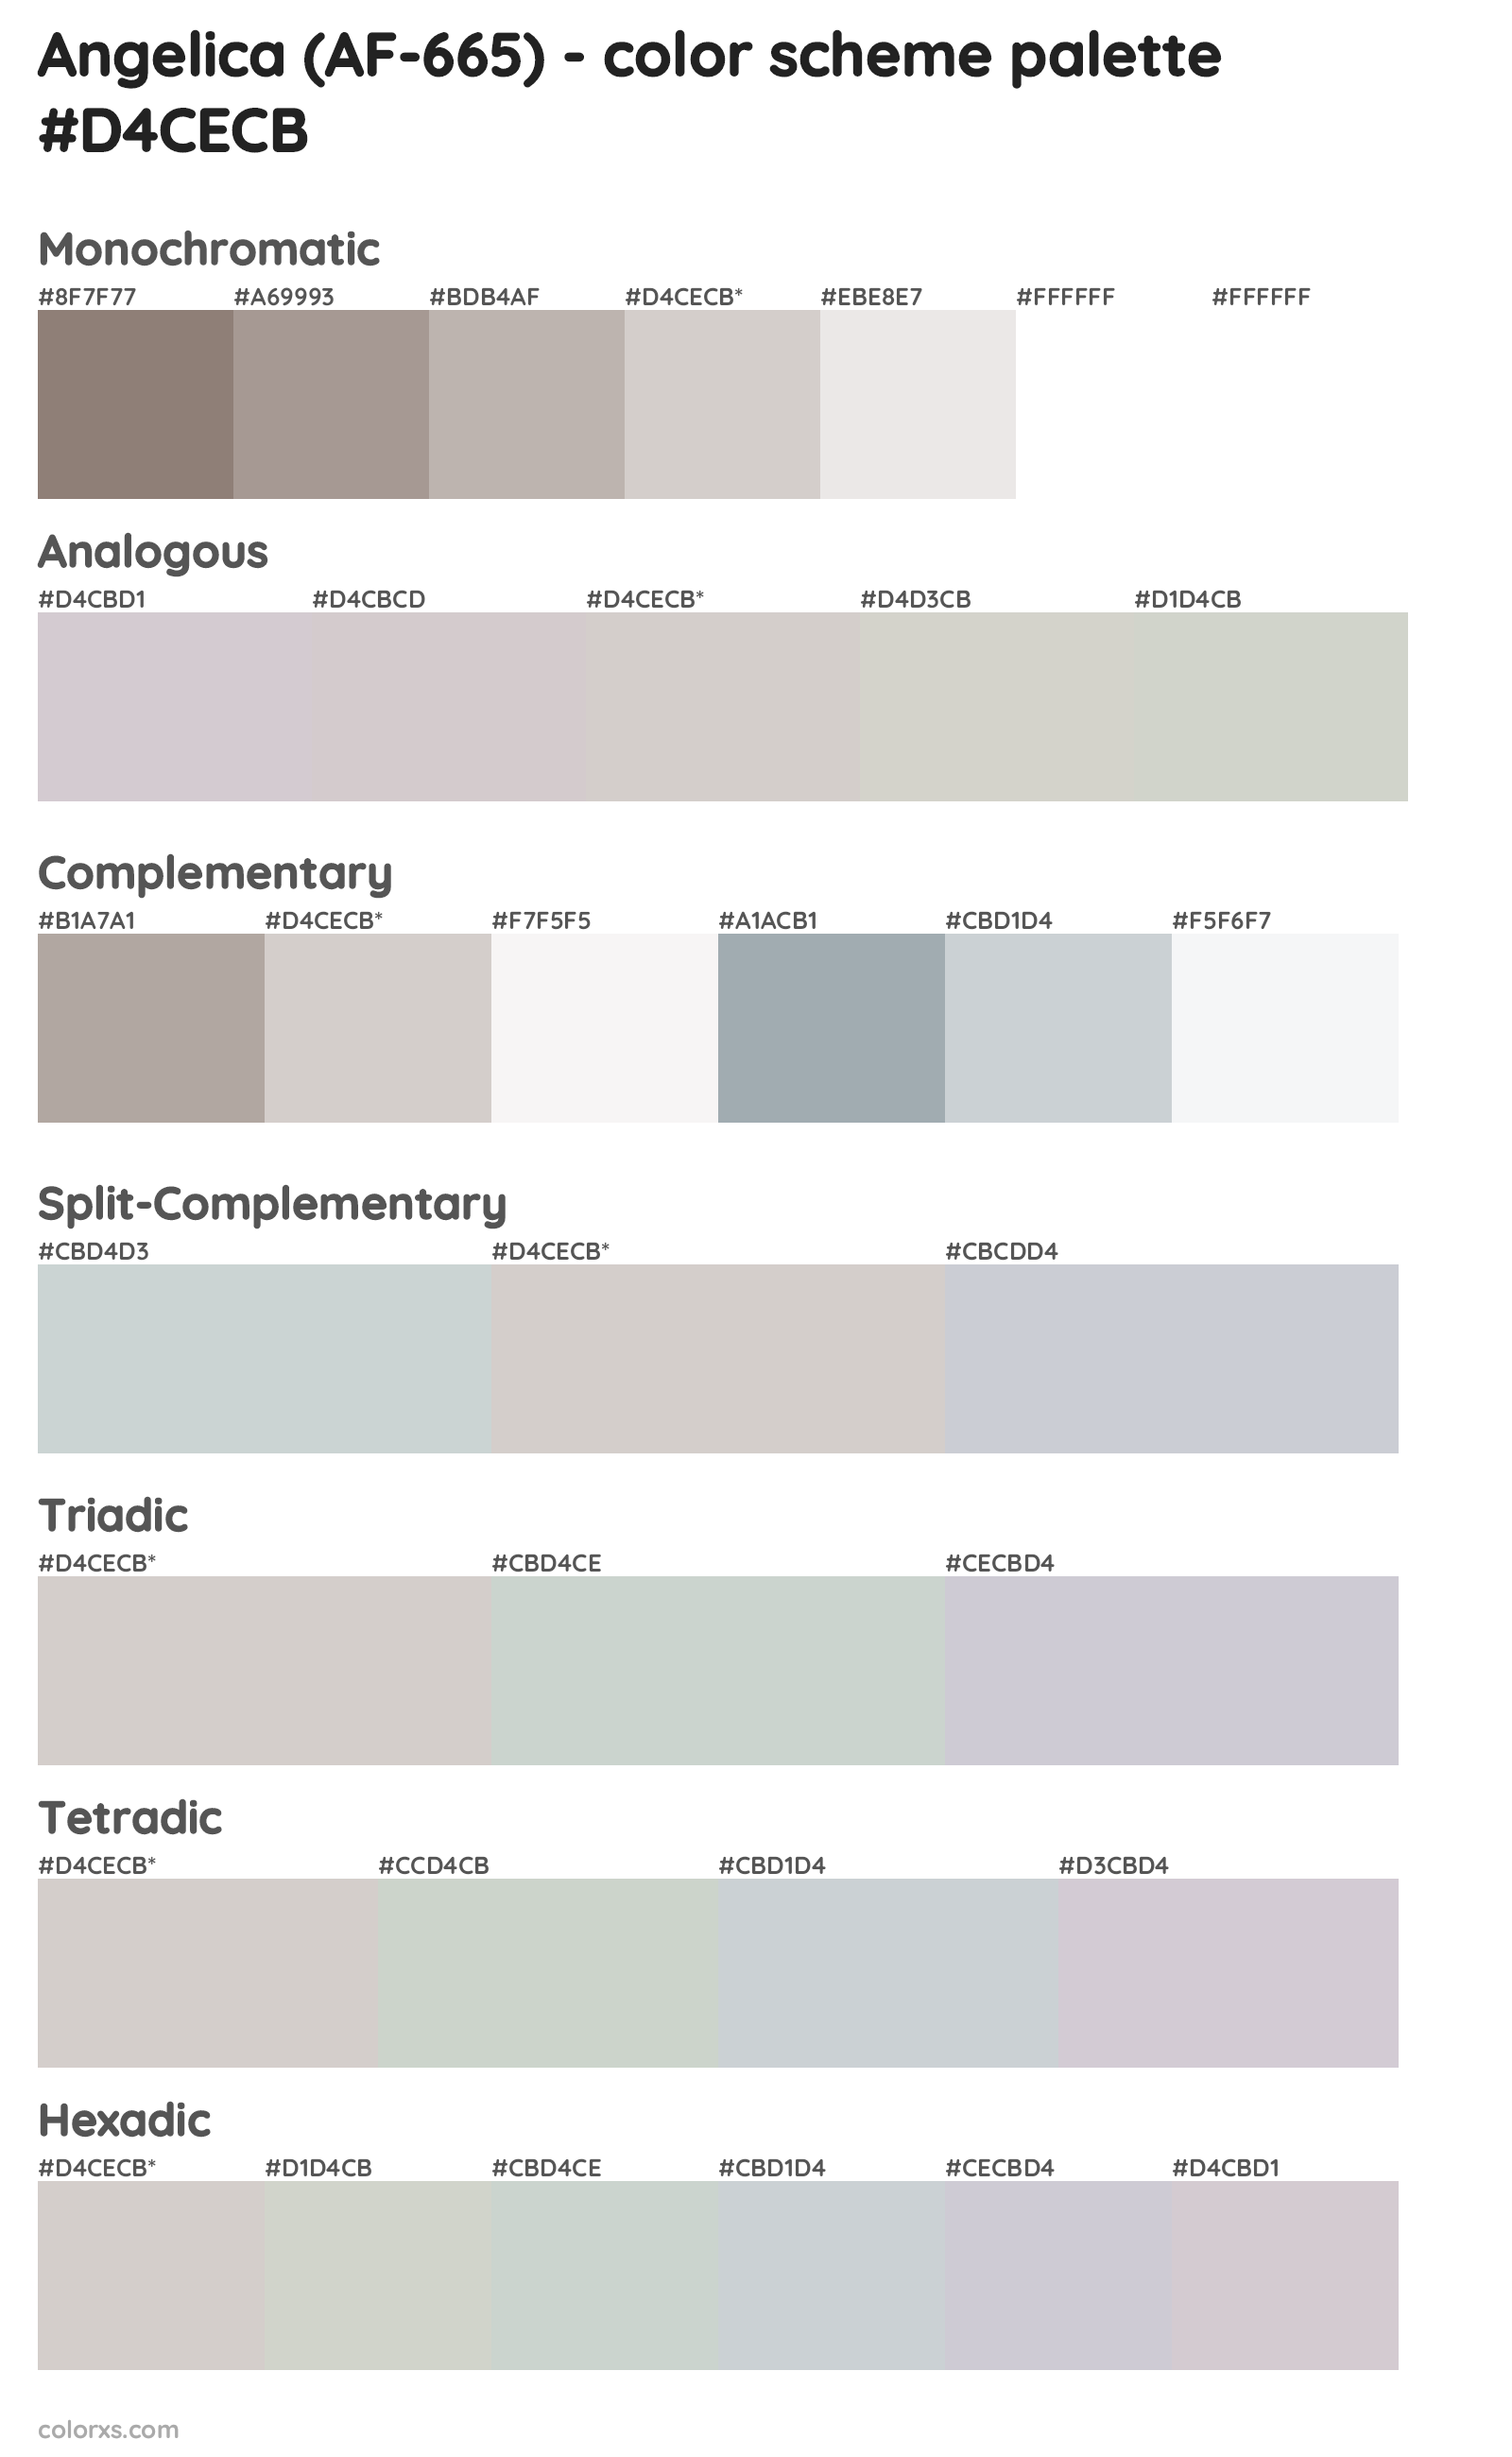 Angelica (AF-665) Color Scheme Palettes